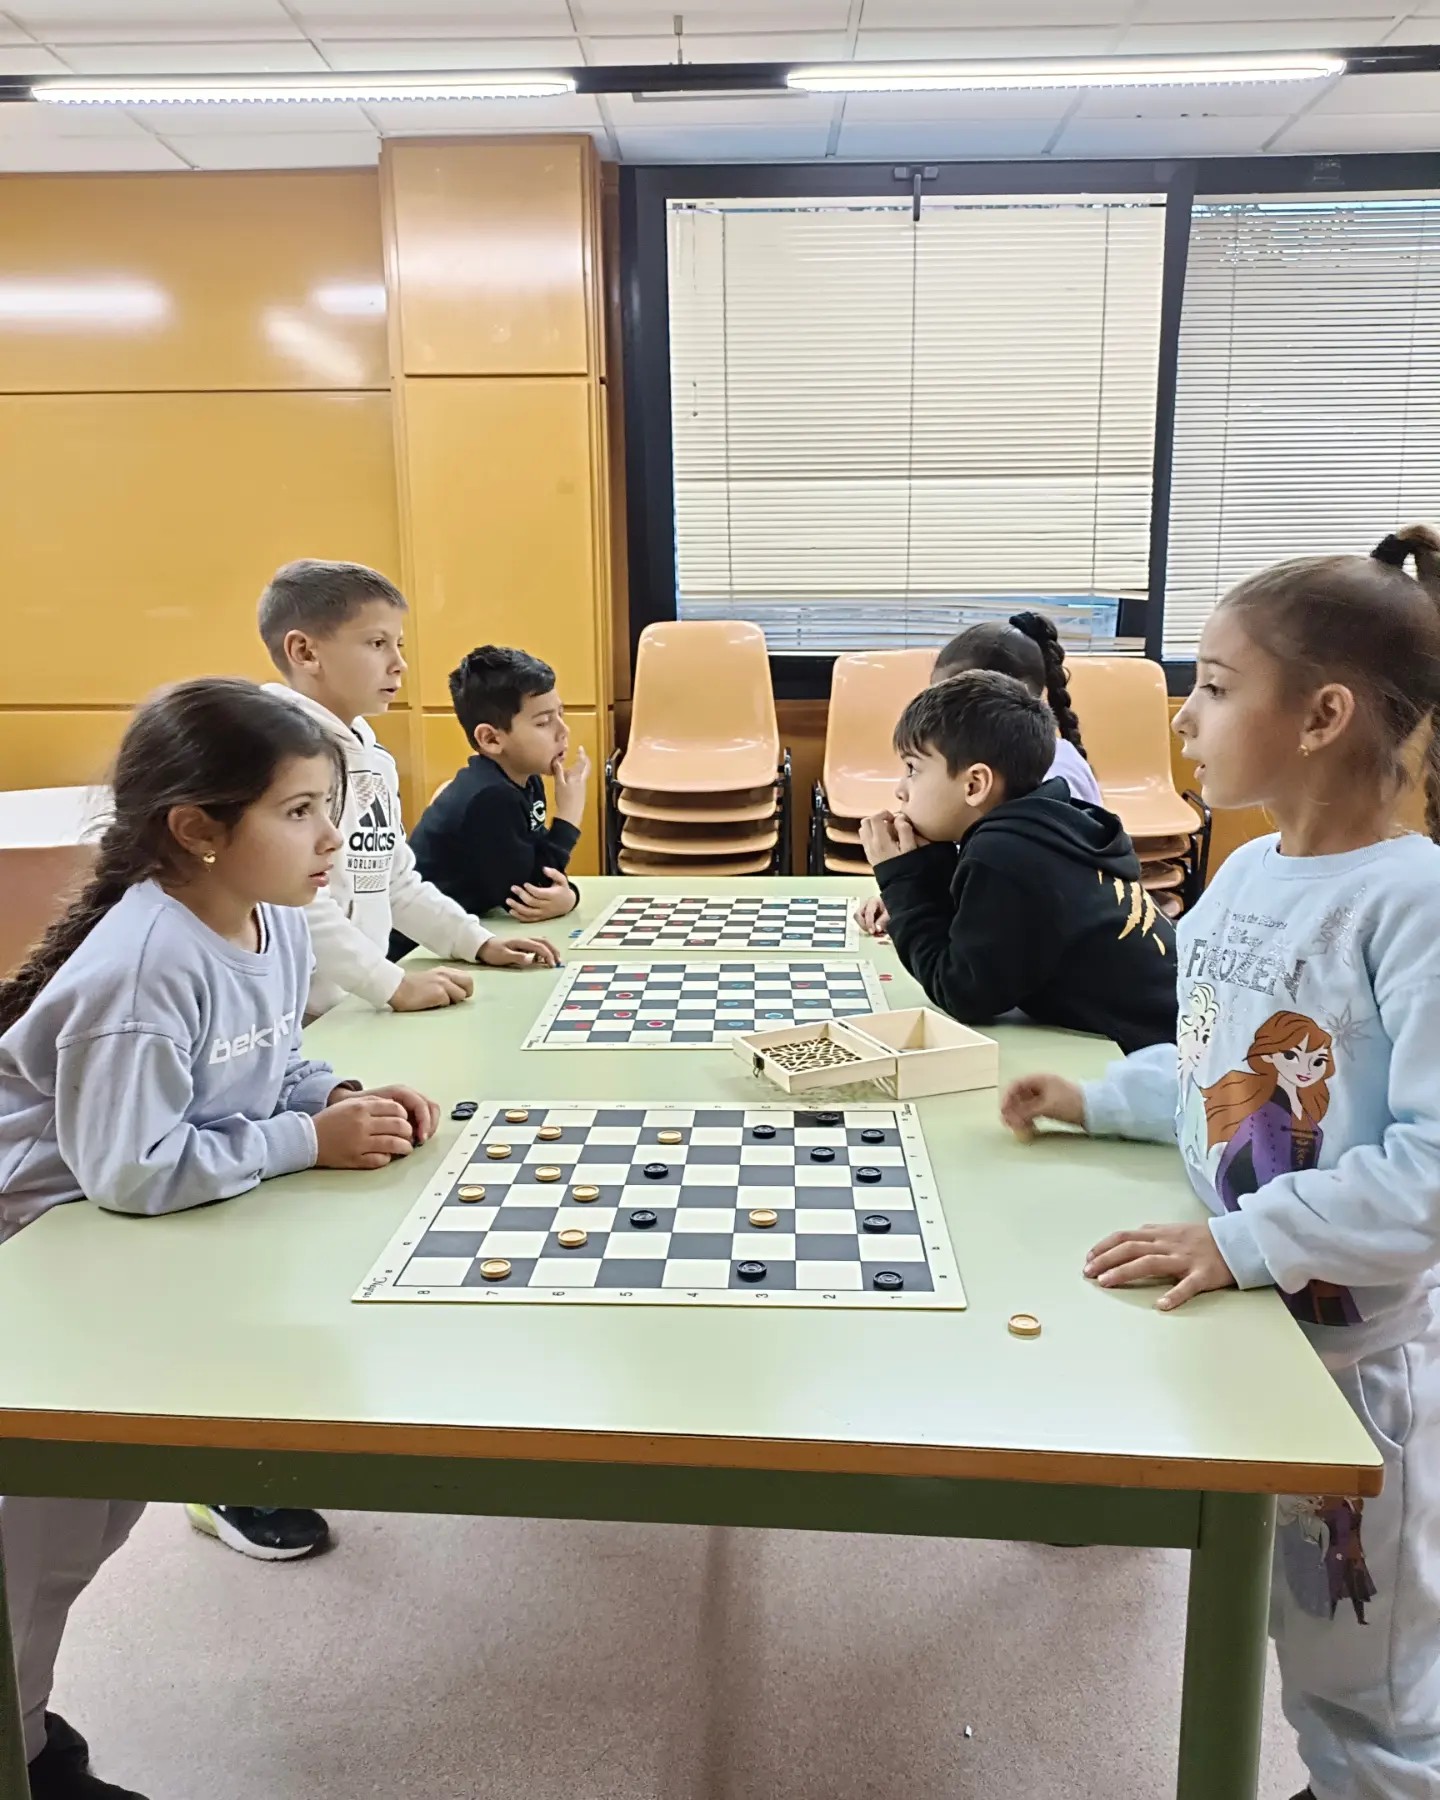   Torneo de ajedrez comunitario